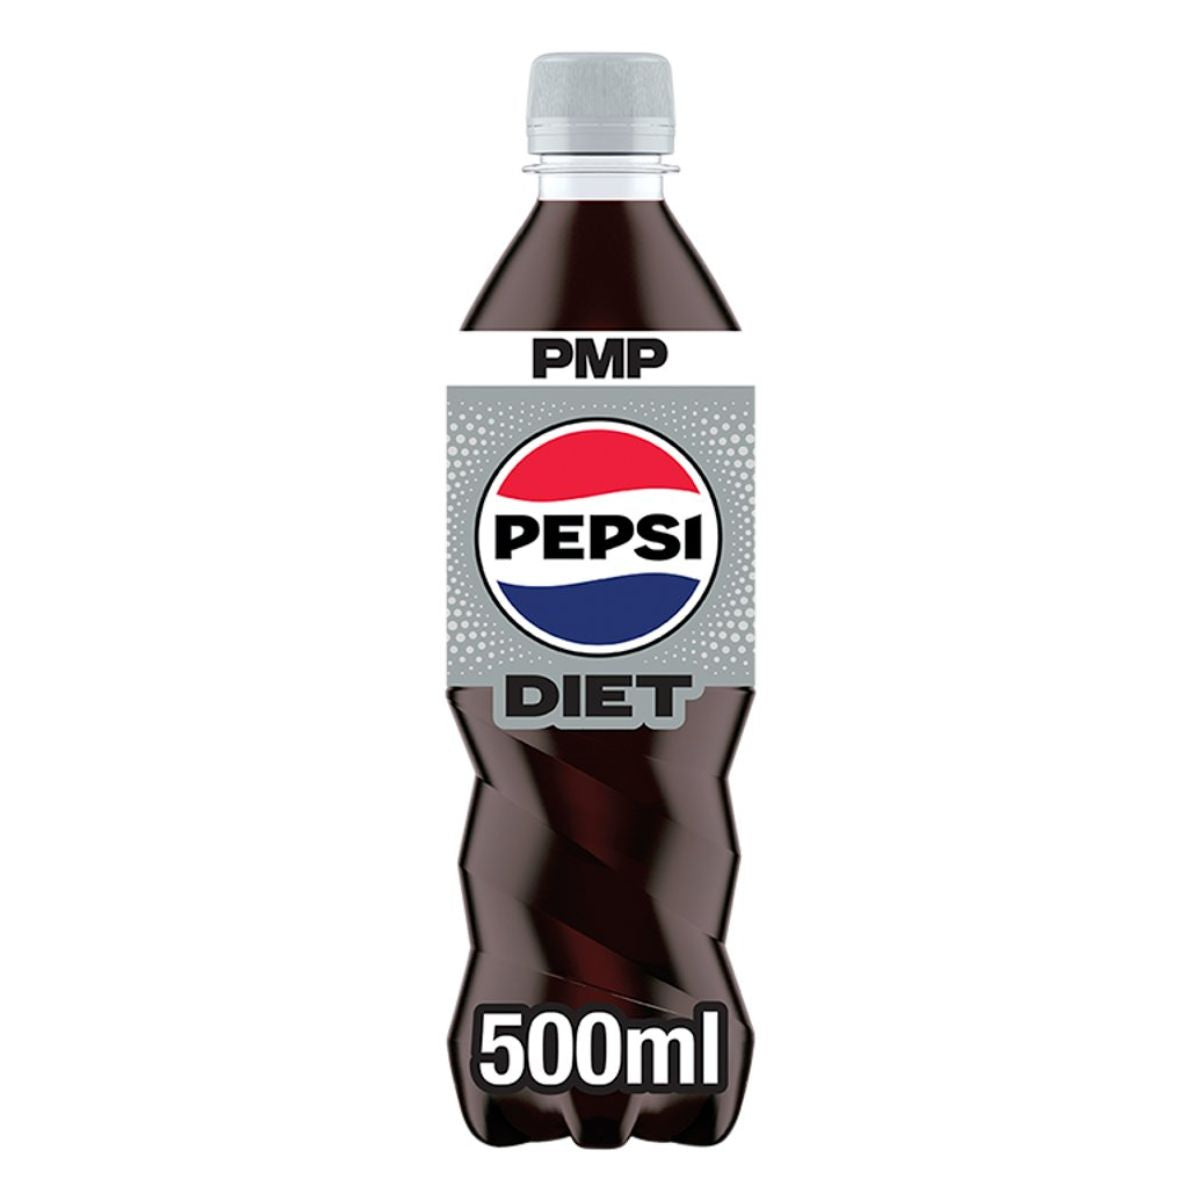 Pepsi - Diet Cola - 500ml.